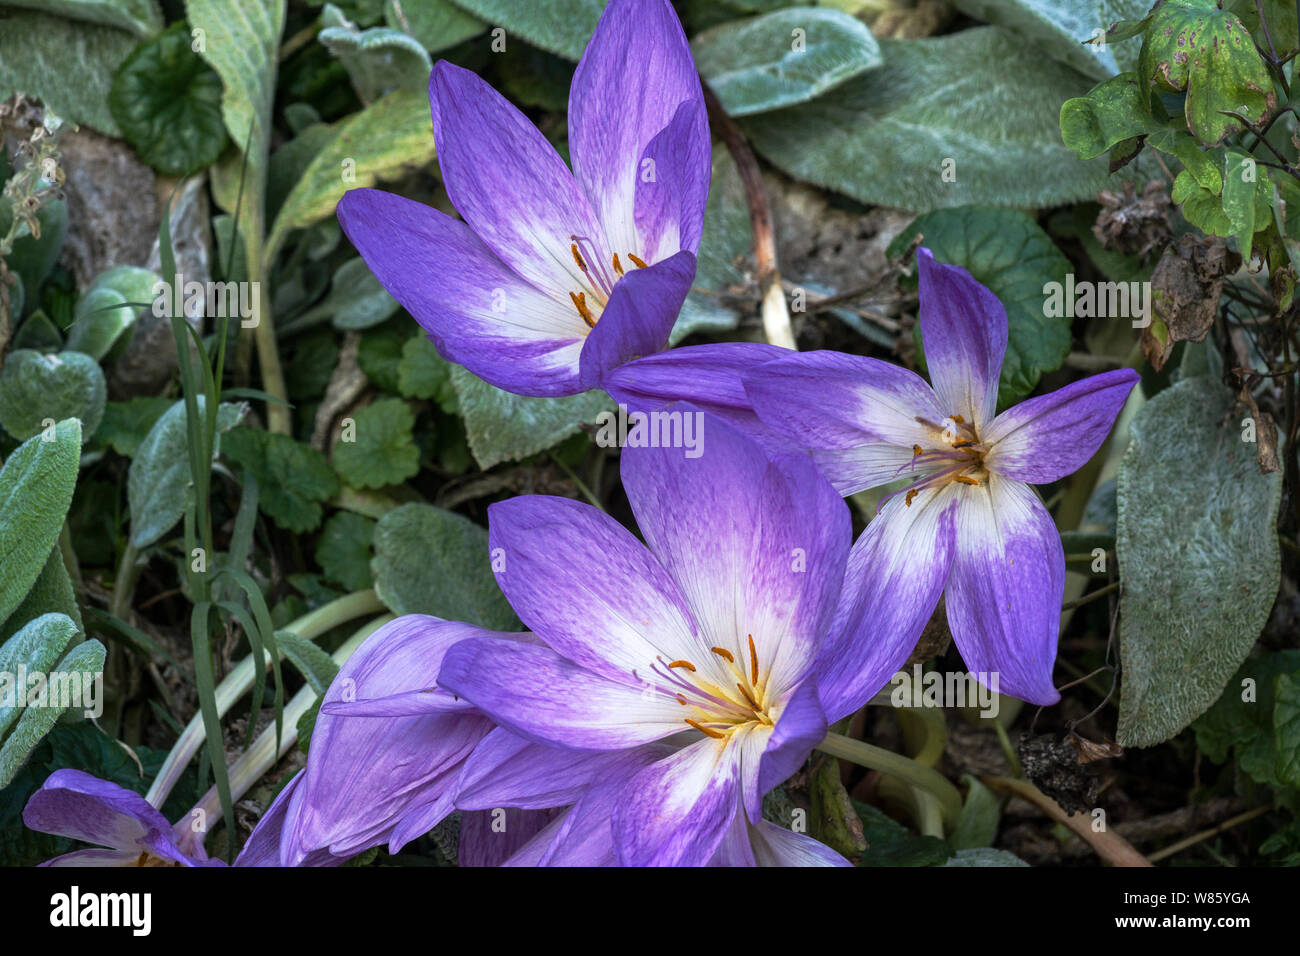 Piante. Tritelera hyacinthina syn Brodiaea hyacinthina. Un tipo di croco fiore con i fiori derivanti prima delle foglie.a sud-ovest della Francia. Foto Stock